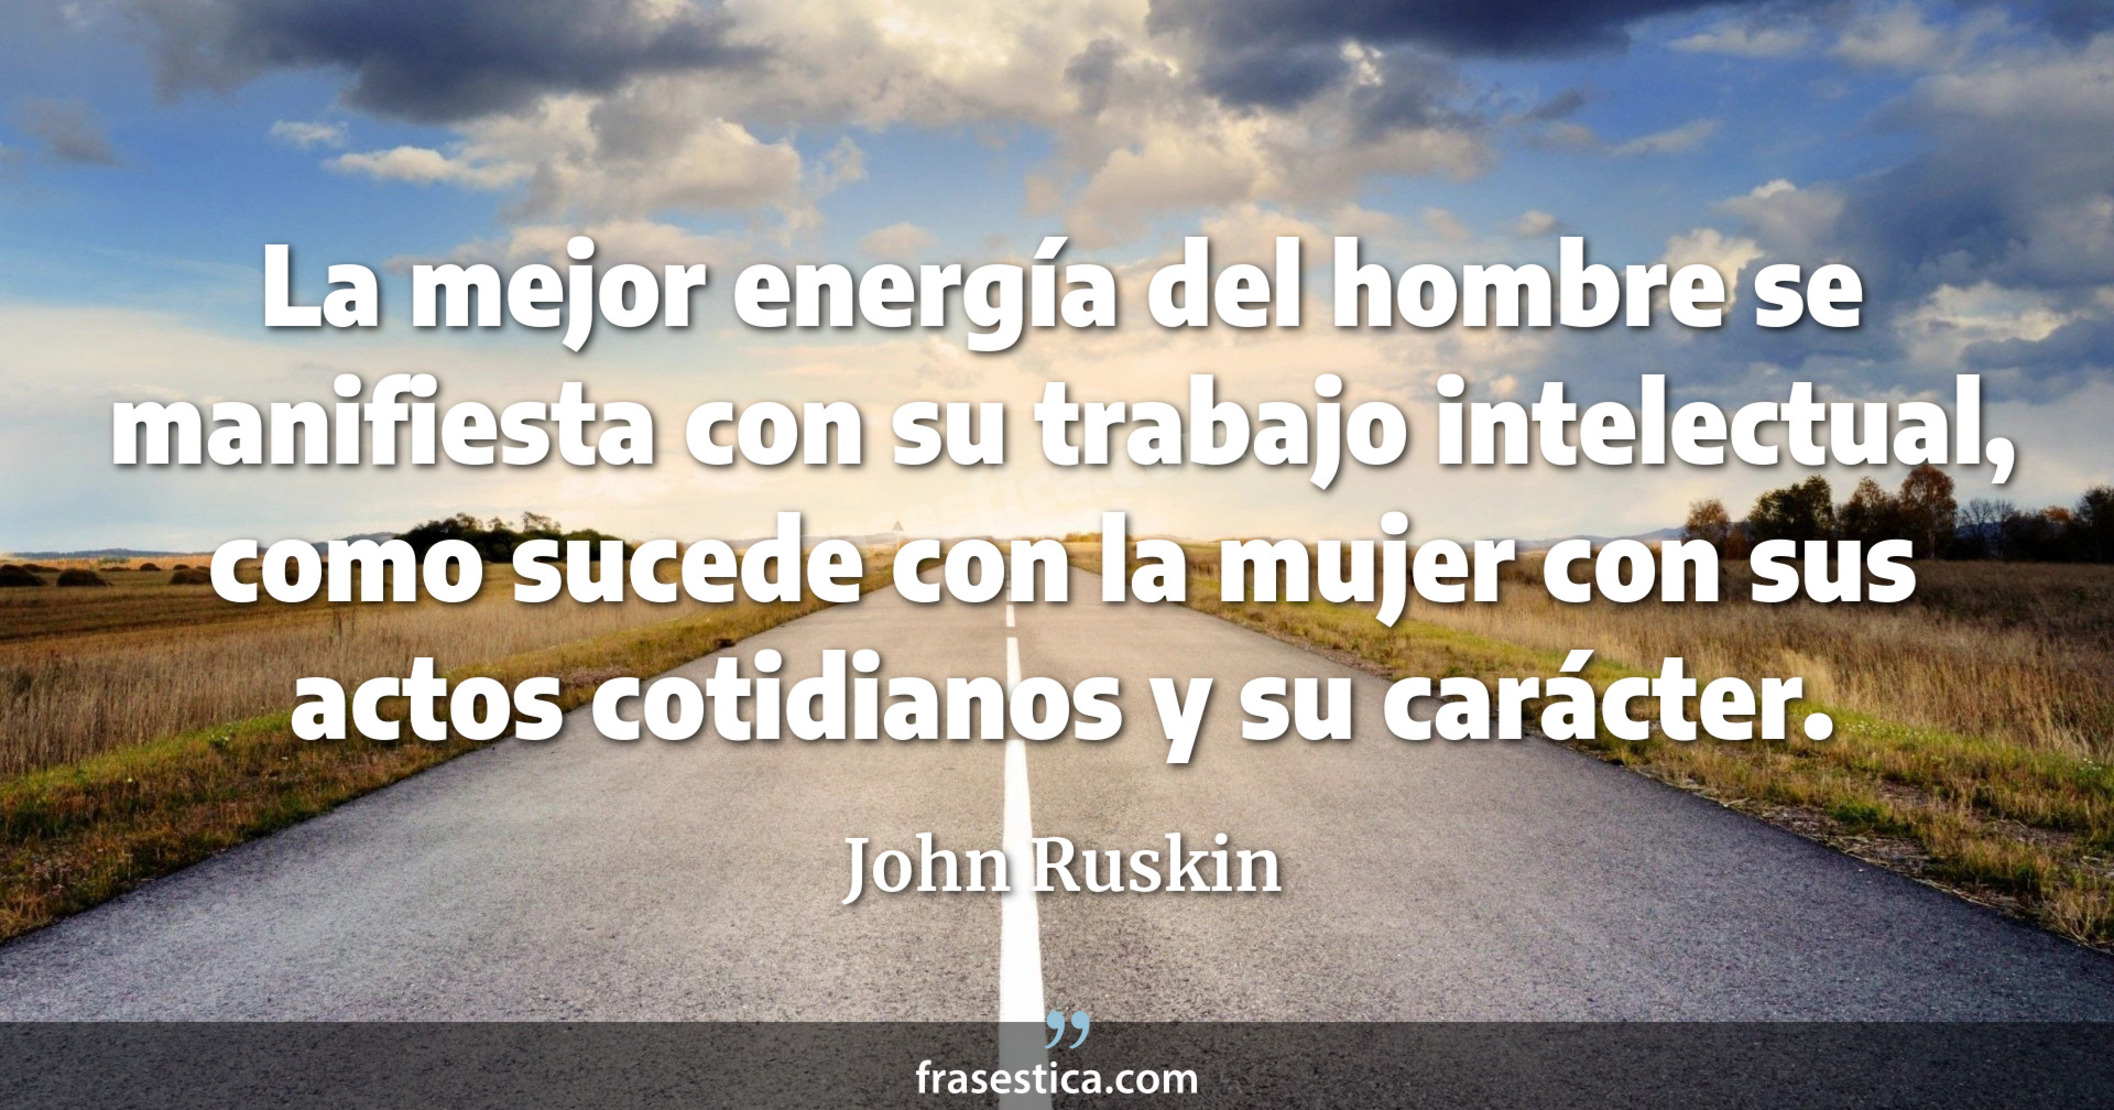 La mejor energía del hombre se manifiesta con su trabajo intelectual, como sucede con la mujer con sus actos cotidianos y su carácter.  - John Ruskin